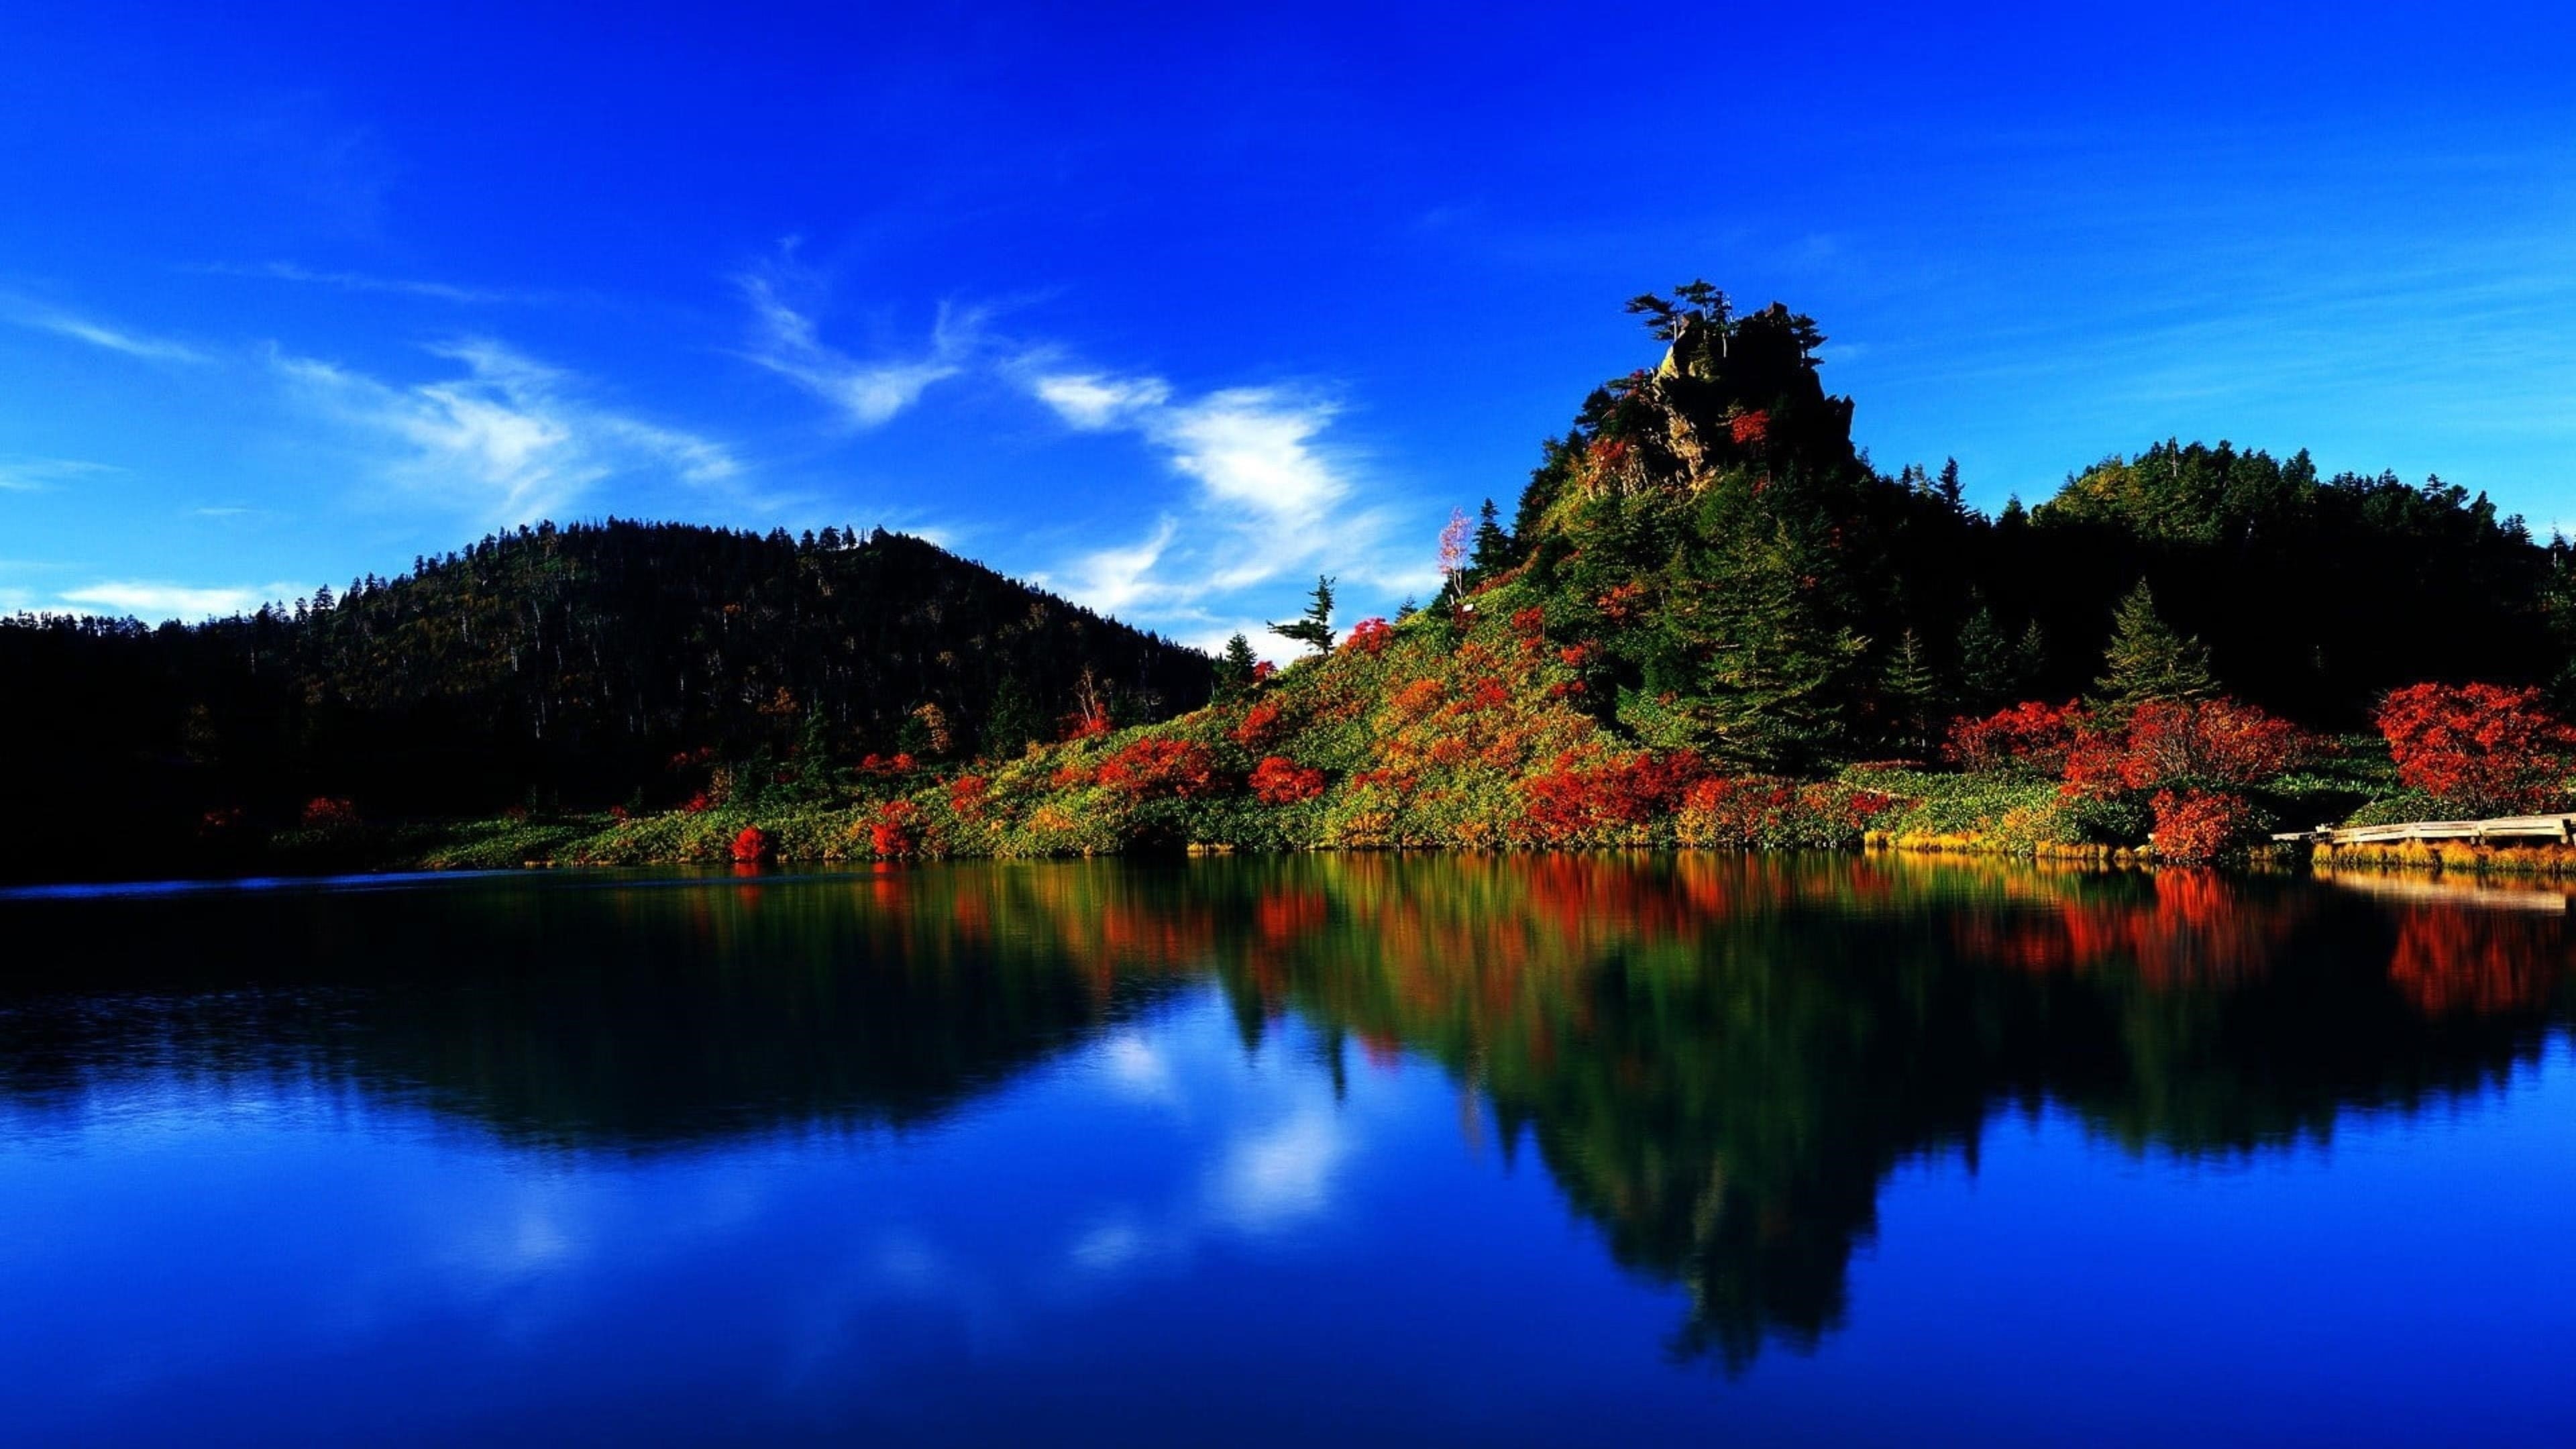 Красочные зеленые деревья и красные цветы покрыли гору рядом со спокойным водоемом с отражением под голубым небом природы обои скачать